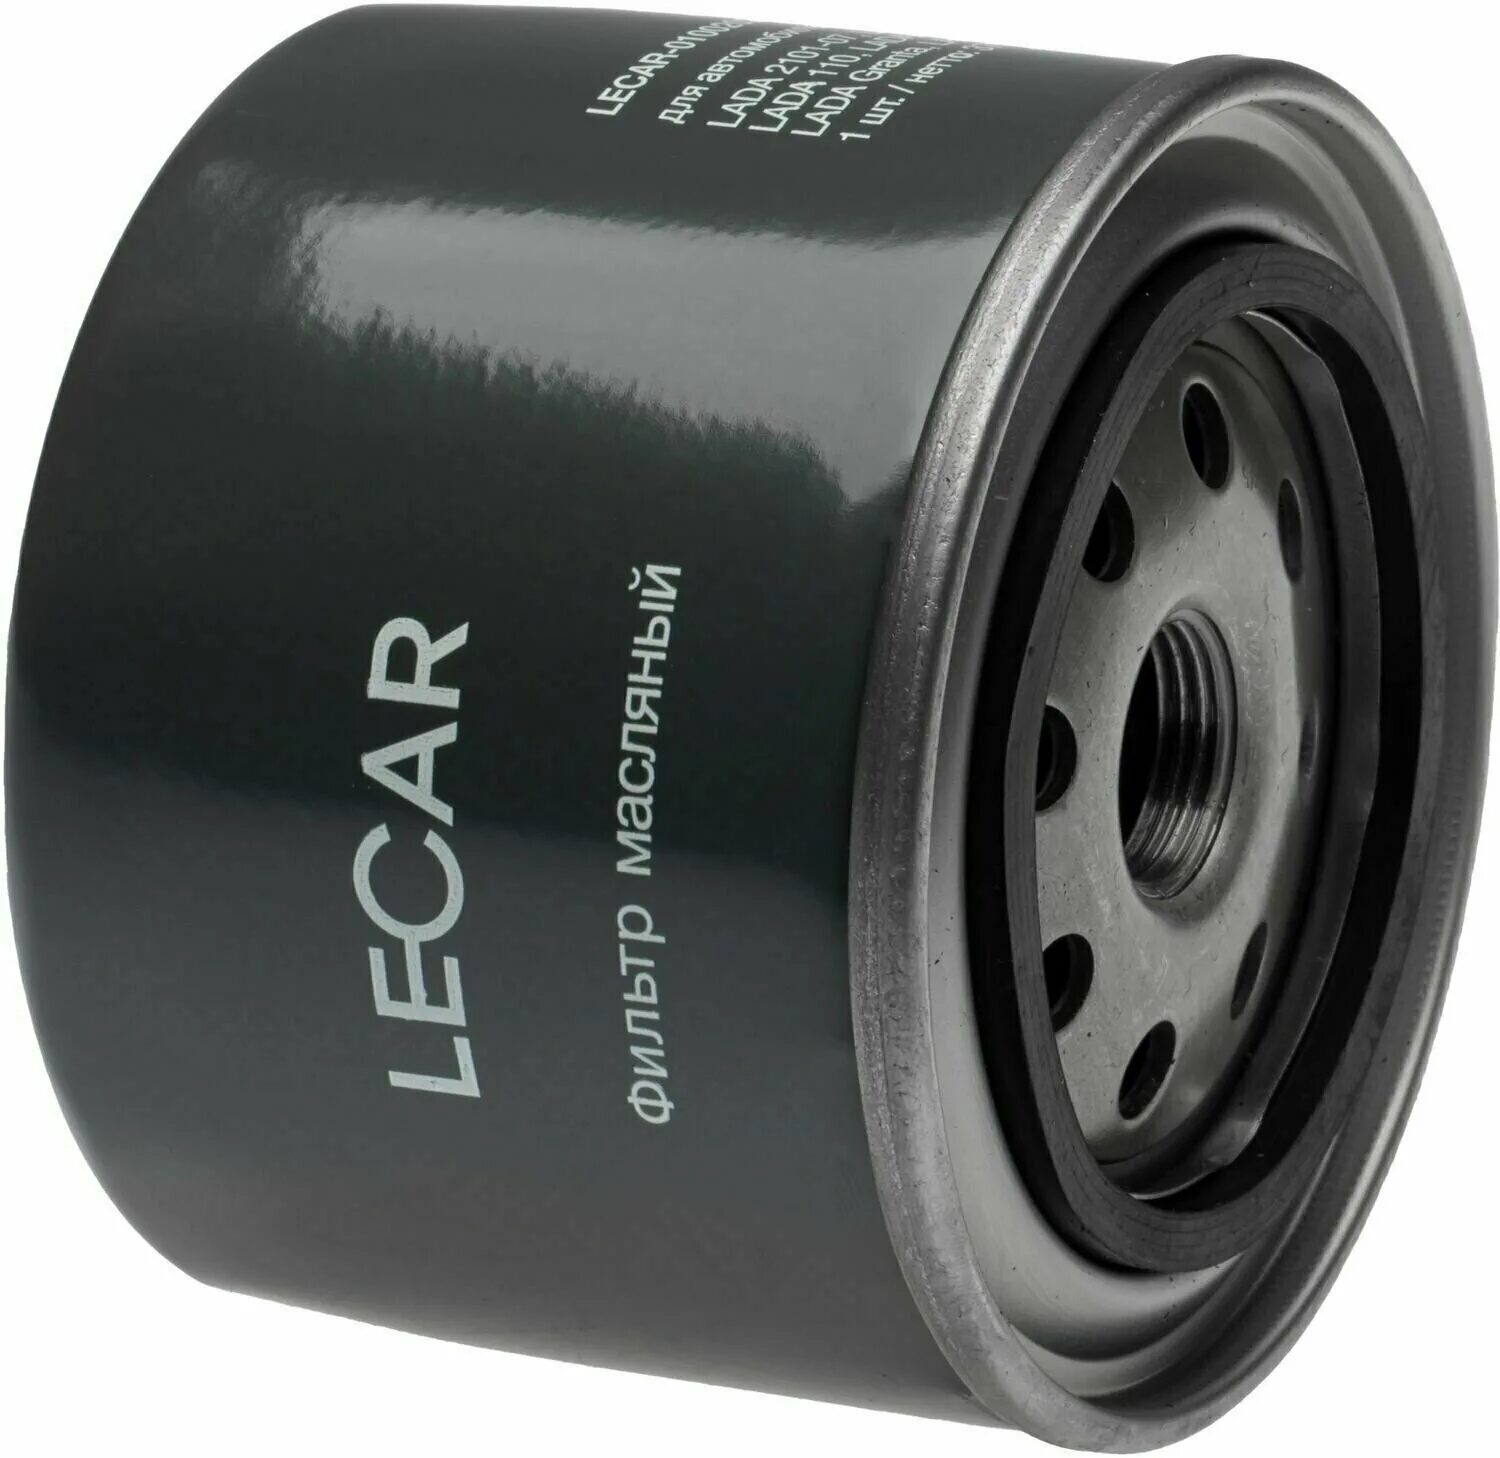 Фильтр масла калина. Фильтр масляный 2105. Масляный фильтр LECAR. LECAR-0110302-01 фильтр масляный 2108 LECAR.